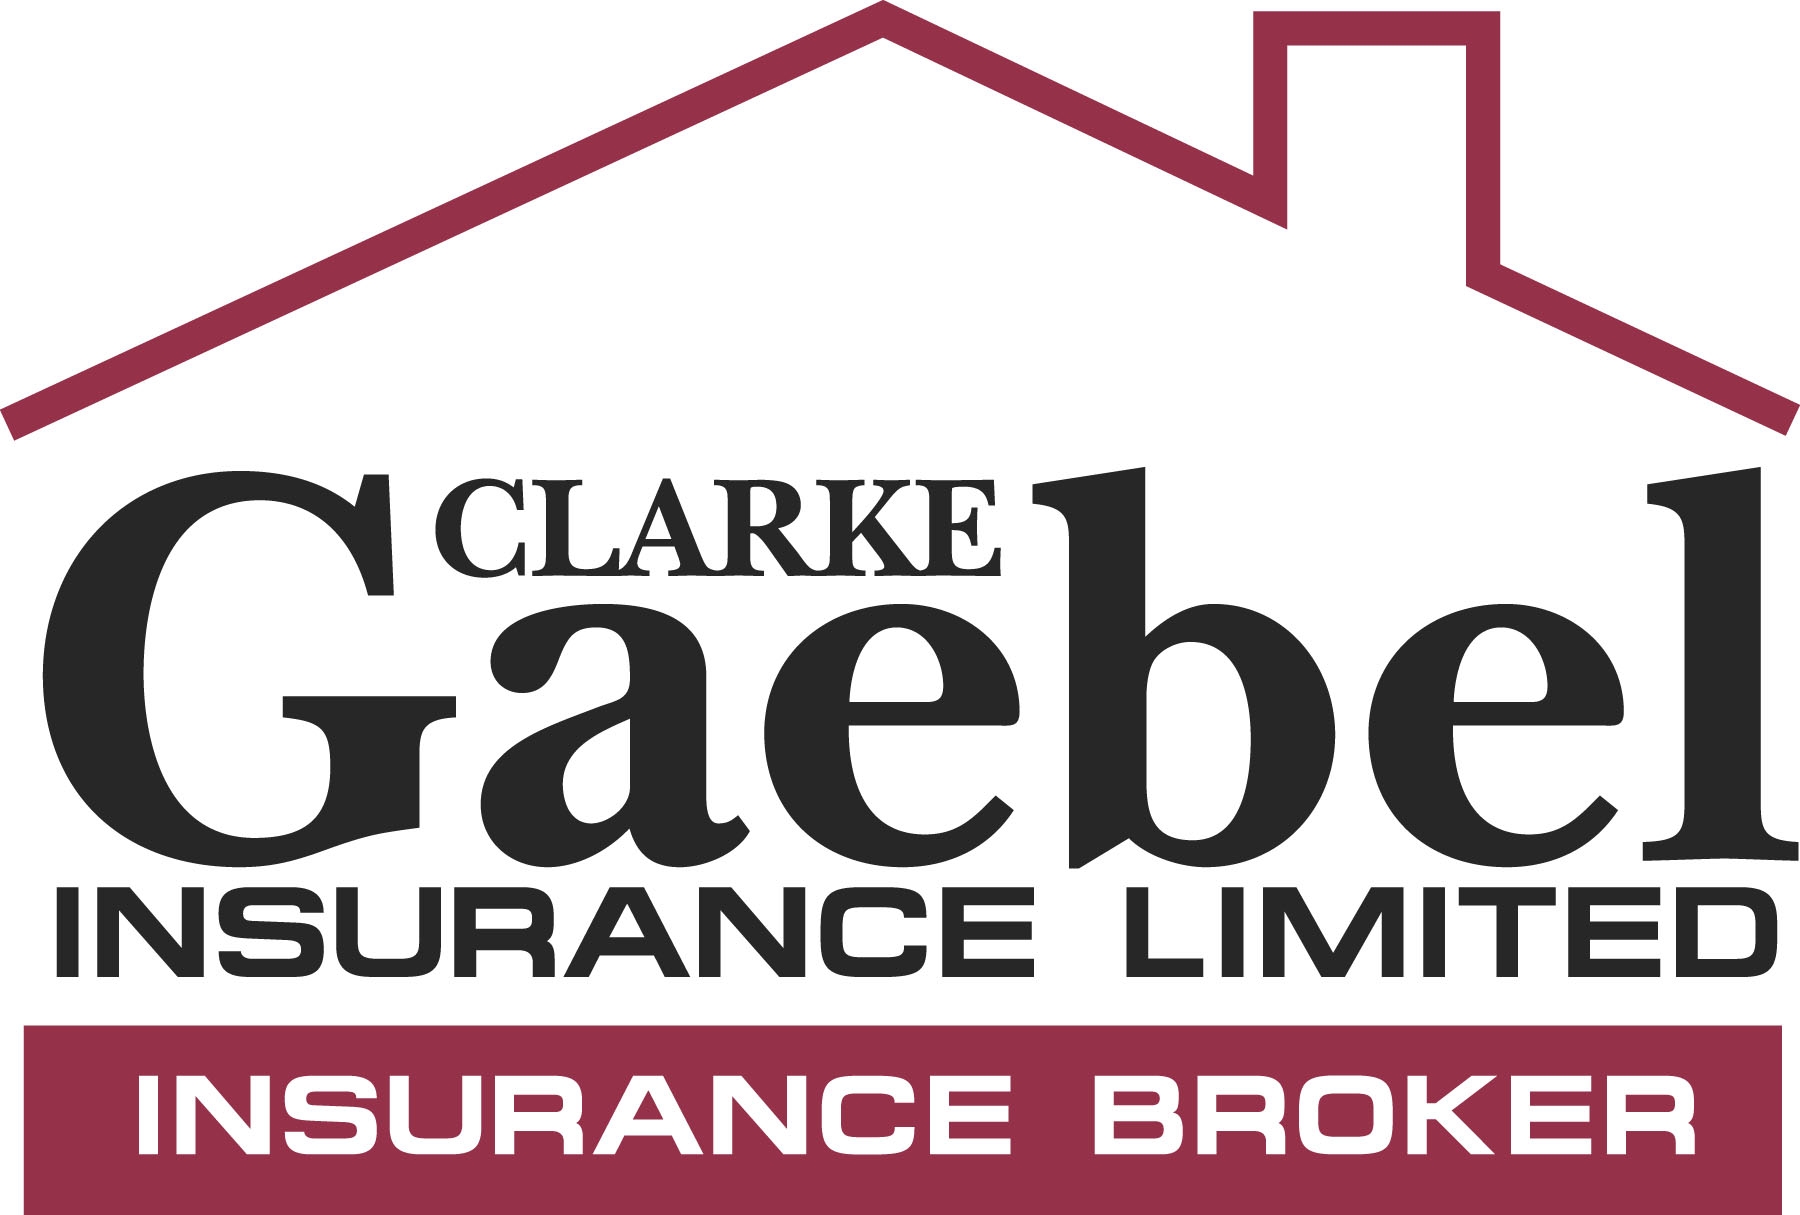 SPONSOR: Gaebel Insurance